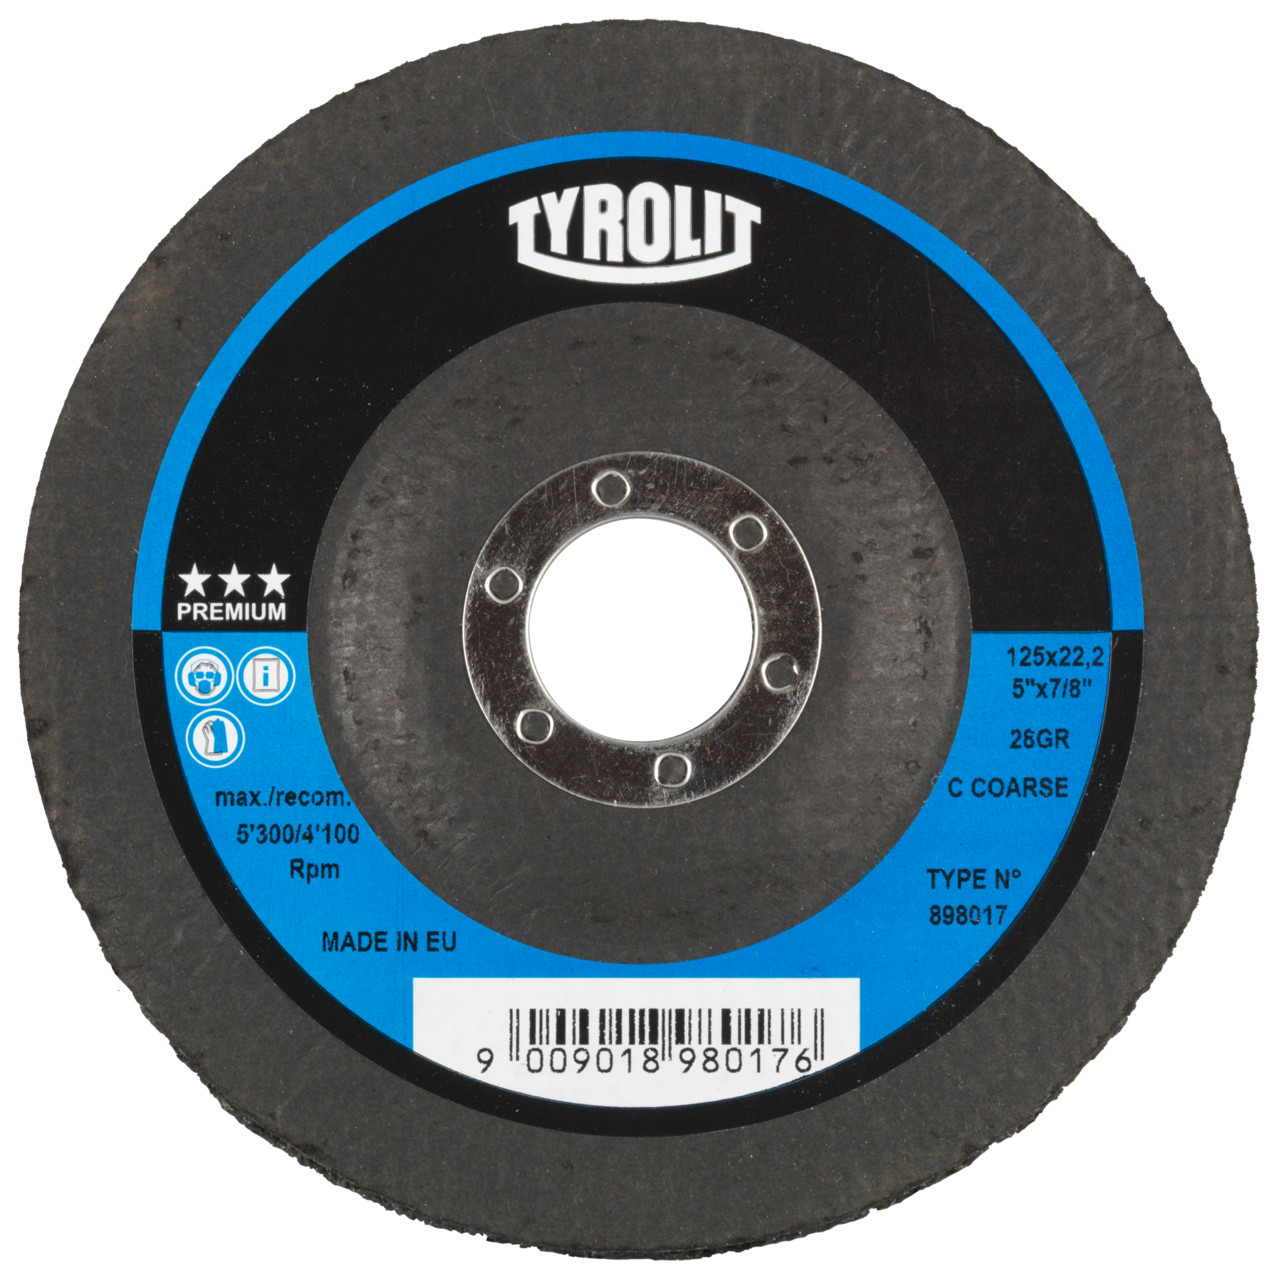 Tyrolit Disco de limpieza grueso DxH 178x22,2 De uso universal, C GROB, forma: 28- (disco de limpieza grueso), Art. 898018